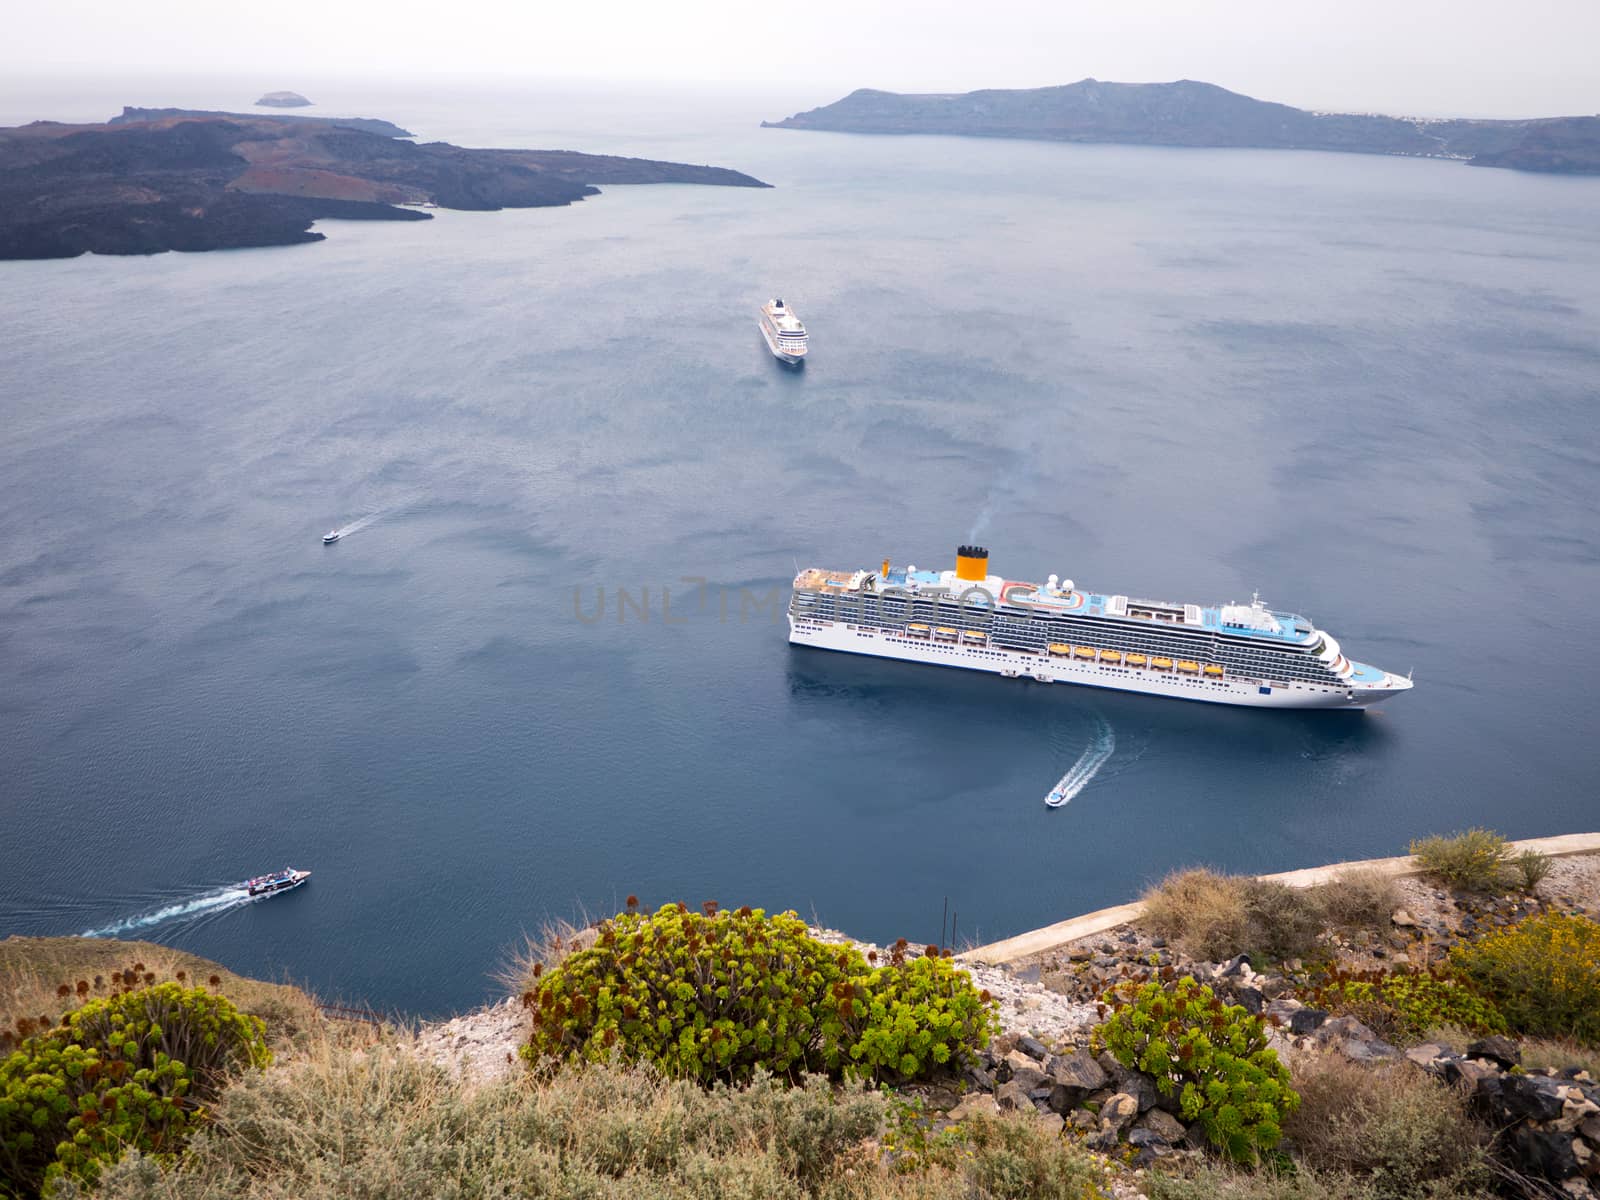 Cruise ship in Santorini island in Cyclades, Greece